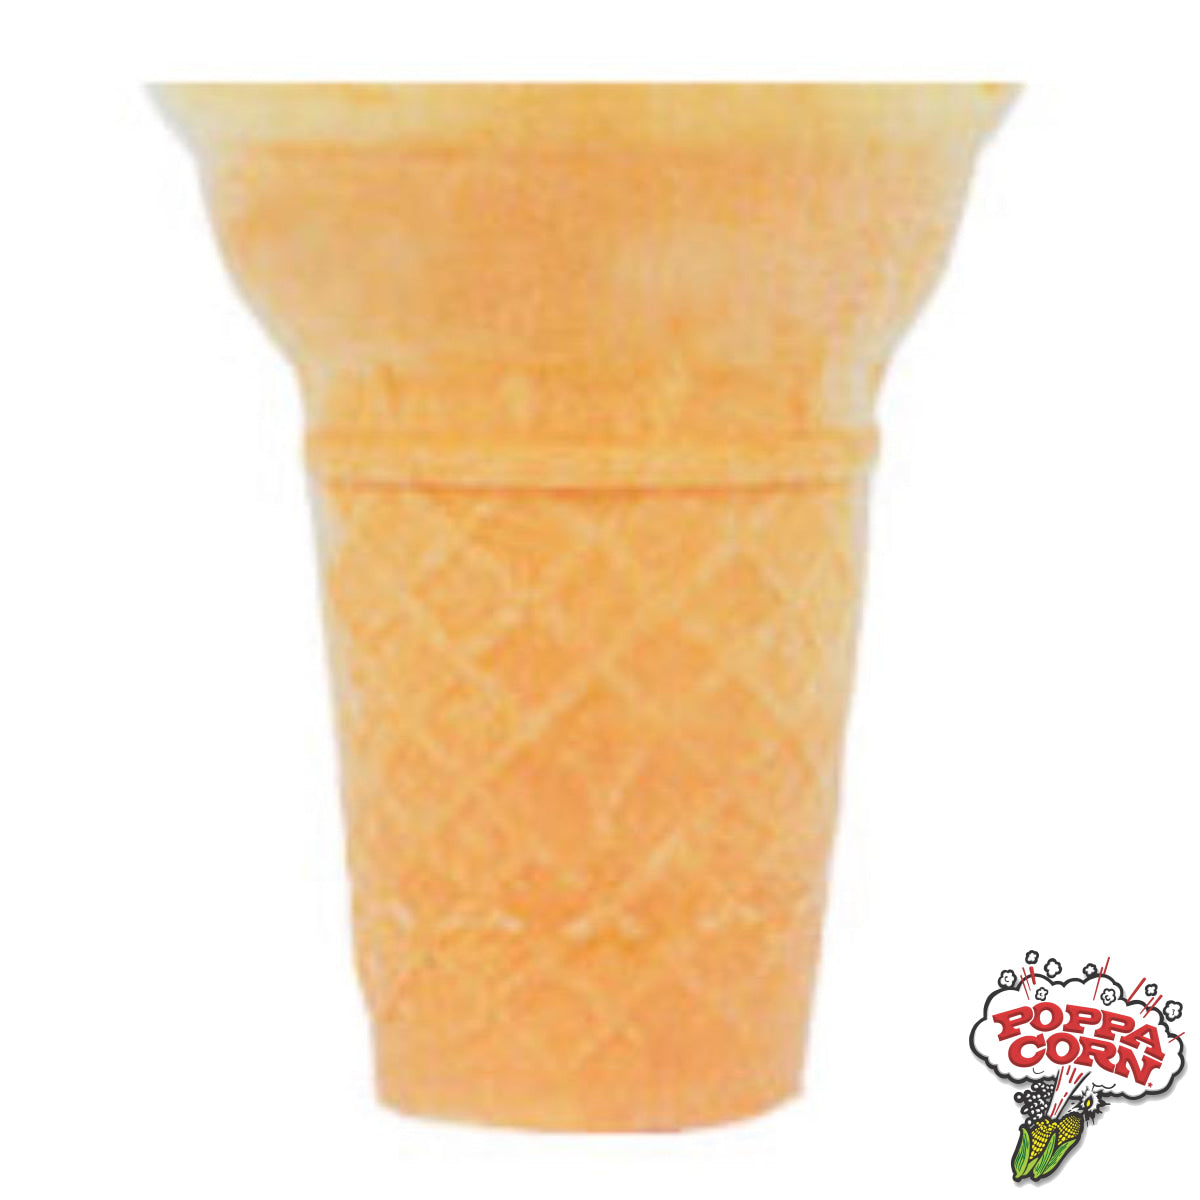 CON035 - Novelty Ice Cream Dispenser Cone #35 - 1000/Case - Poppa Corn Corp